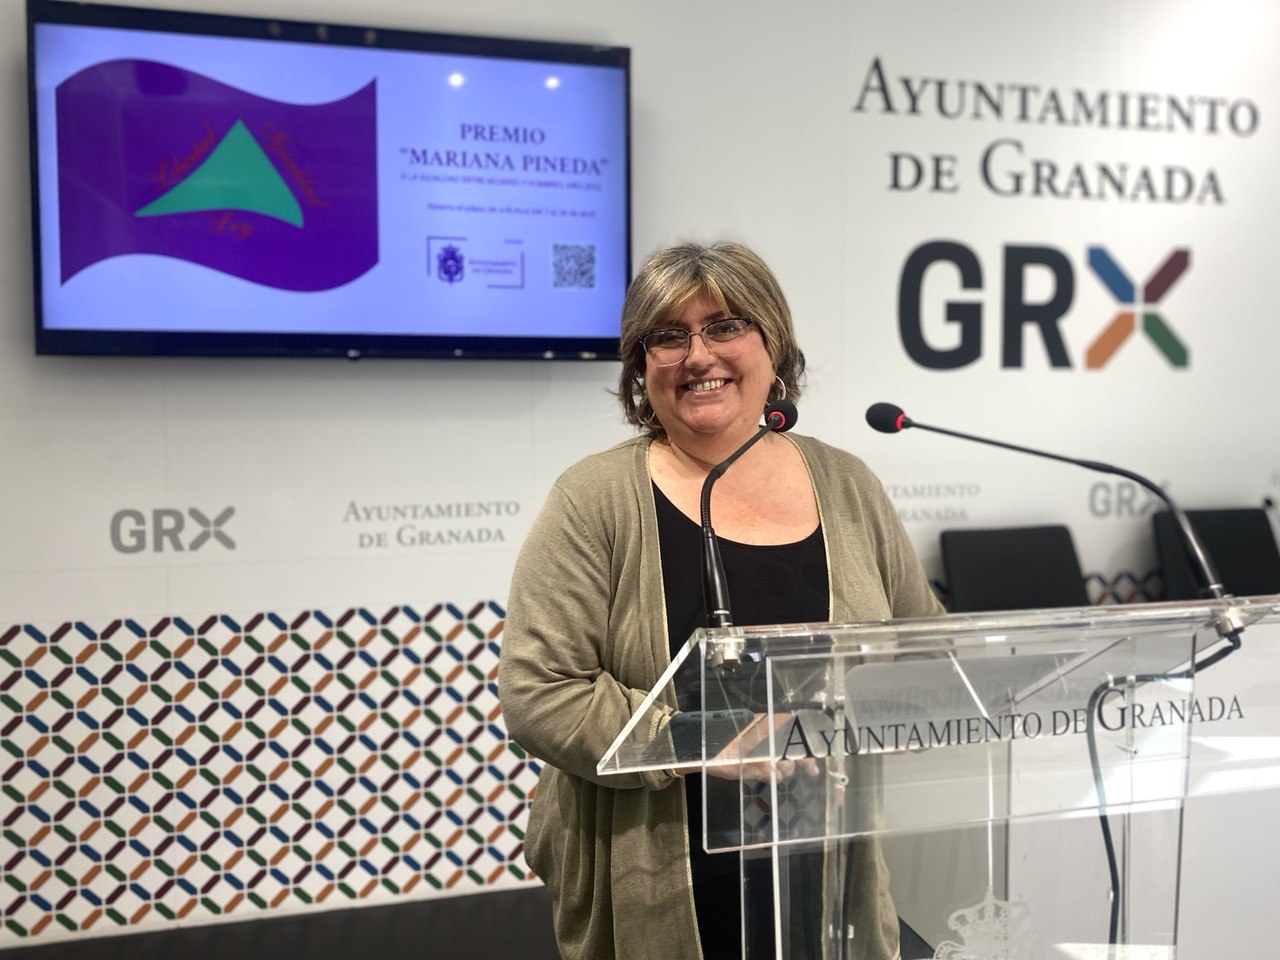 El Ayuntamiento convoca el Premio Mariana Pineda en reconocimiento a las personas y entidades que trabajan por la igualdad